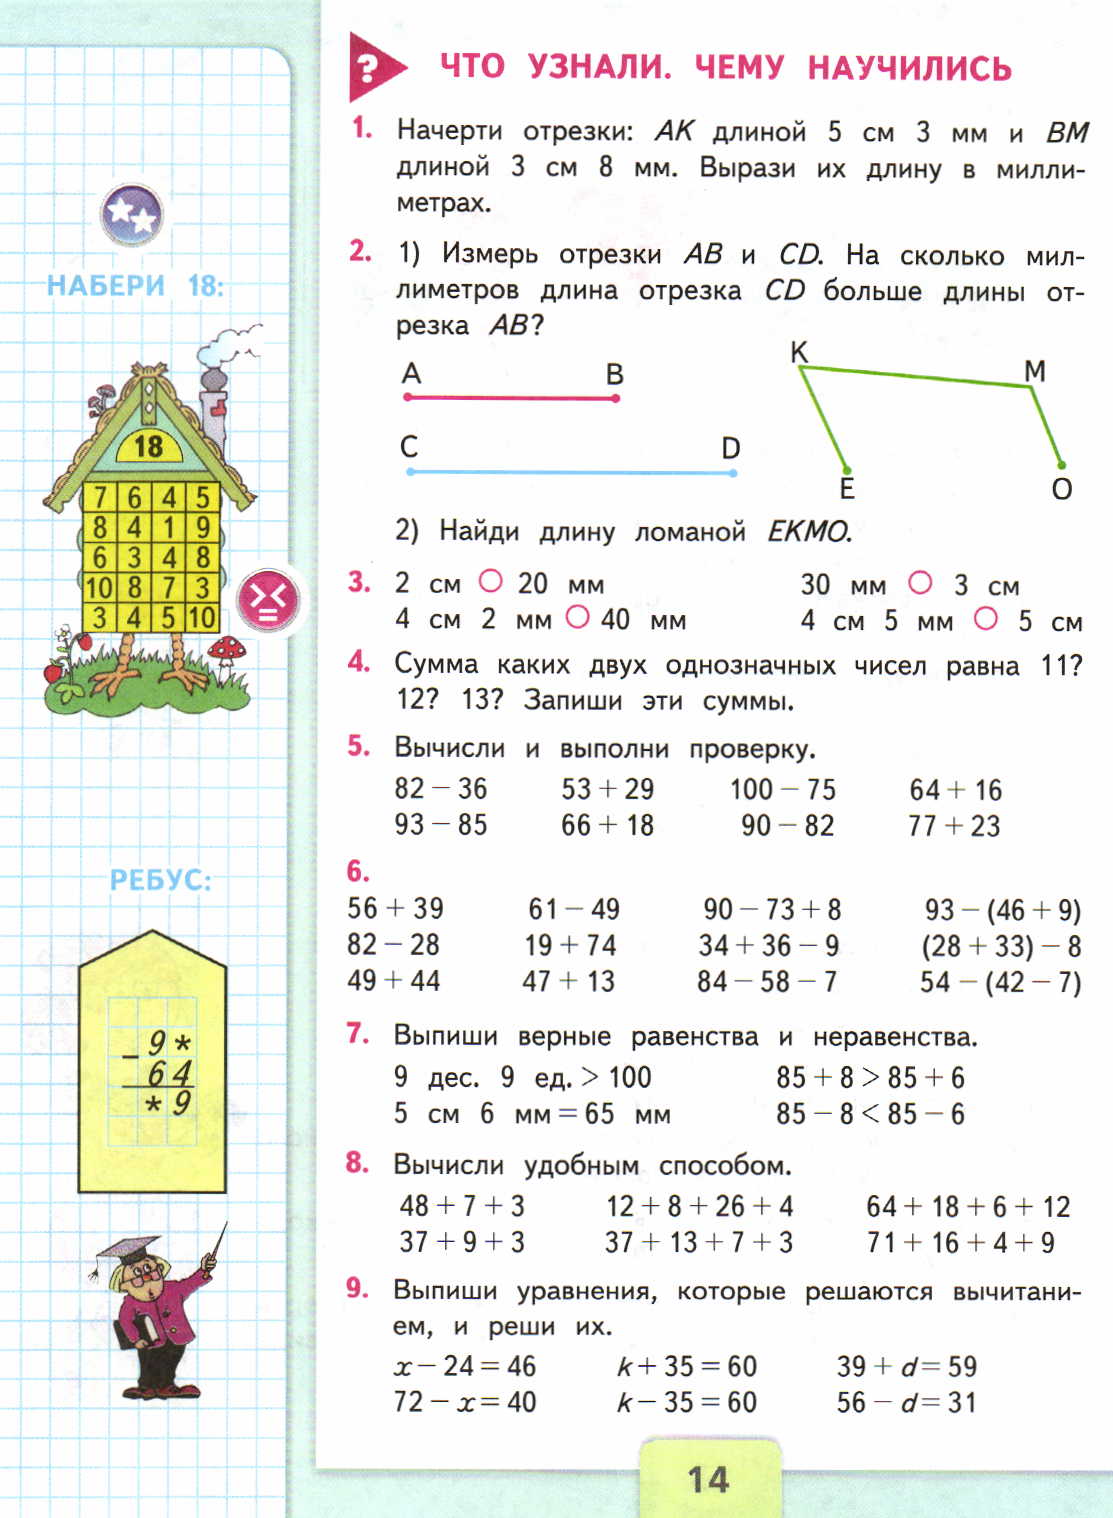 Математика 3 класс учебник скачать бесплатно pdf